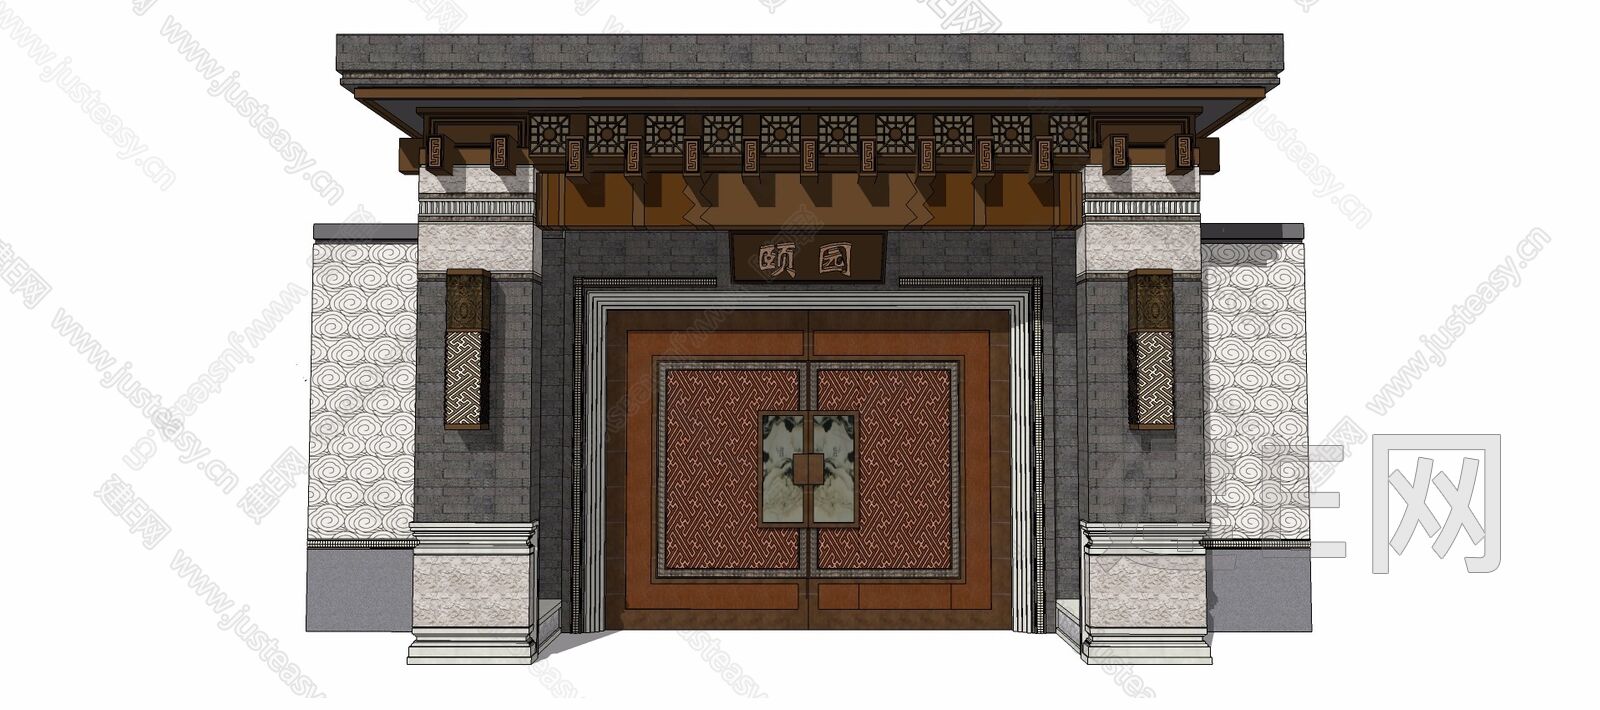 新中式大门入口sketchup模型